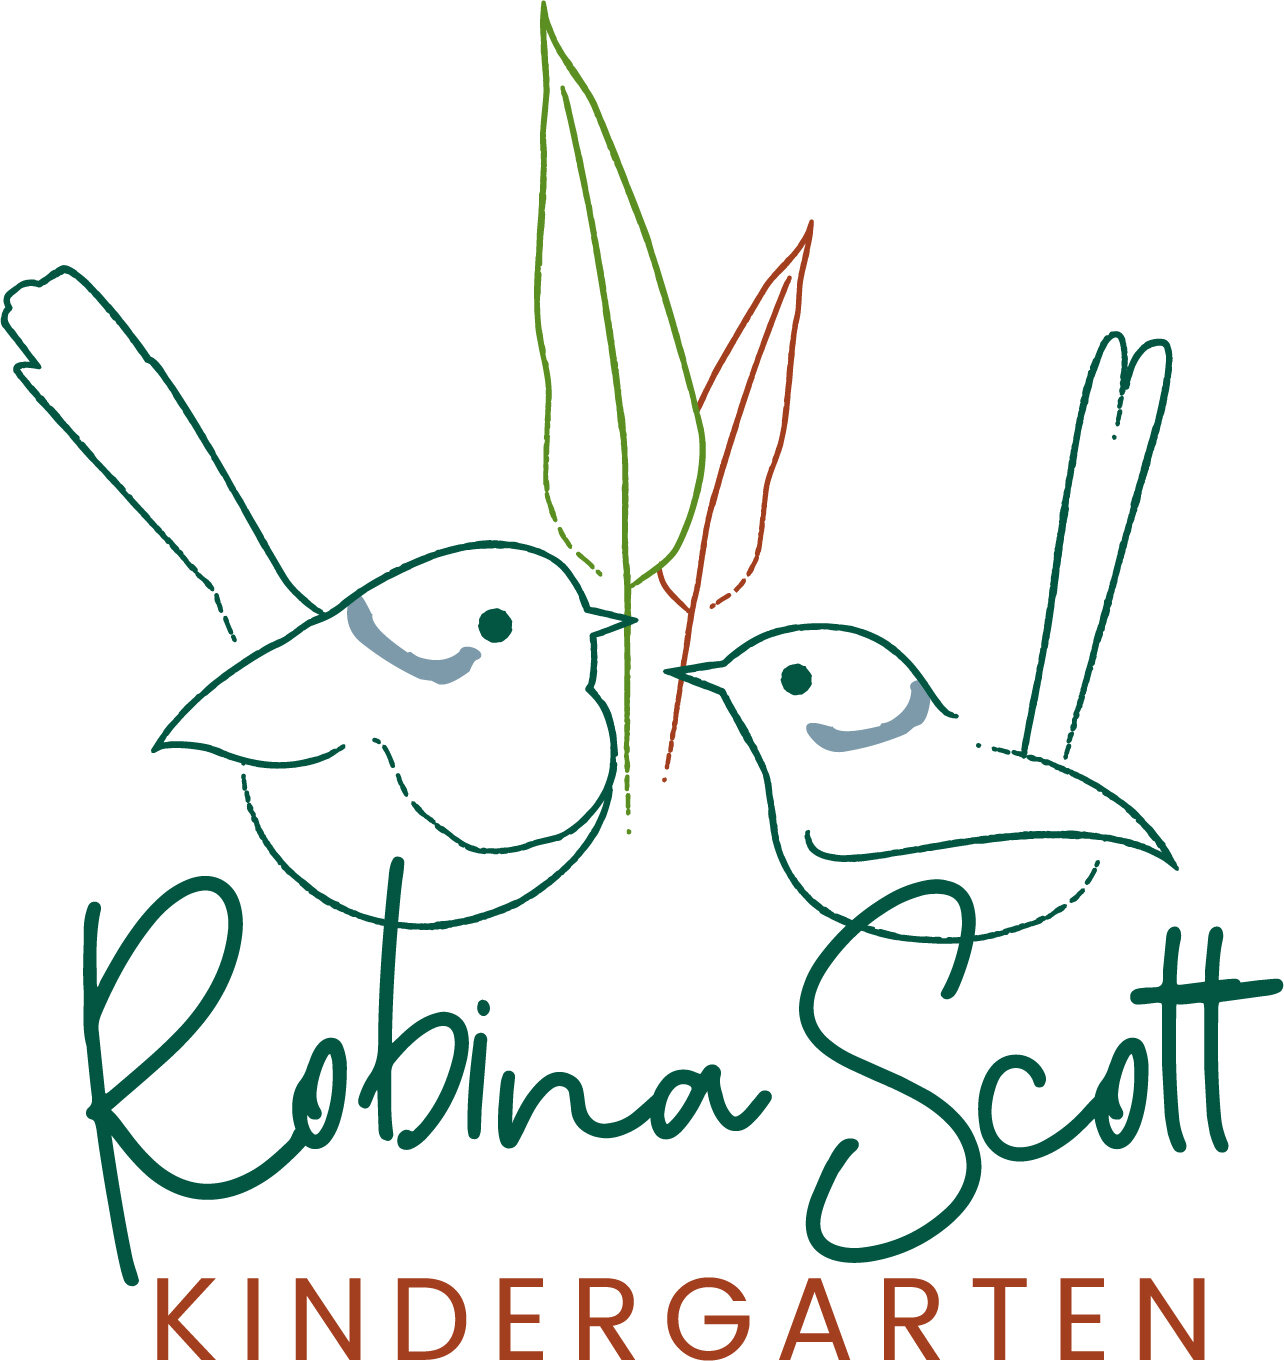 Robina Scott Kindergarten